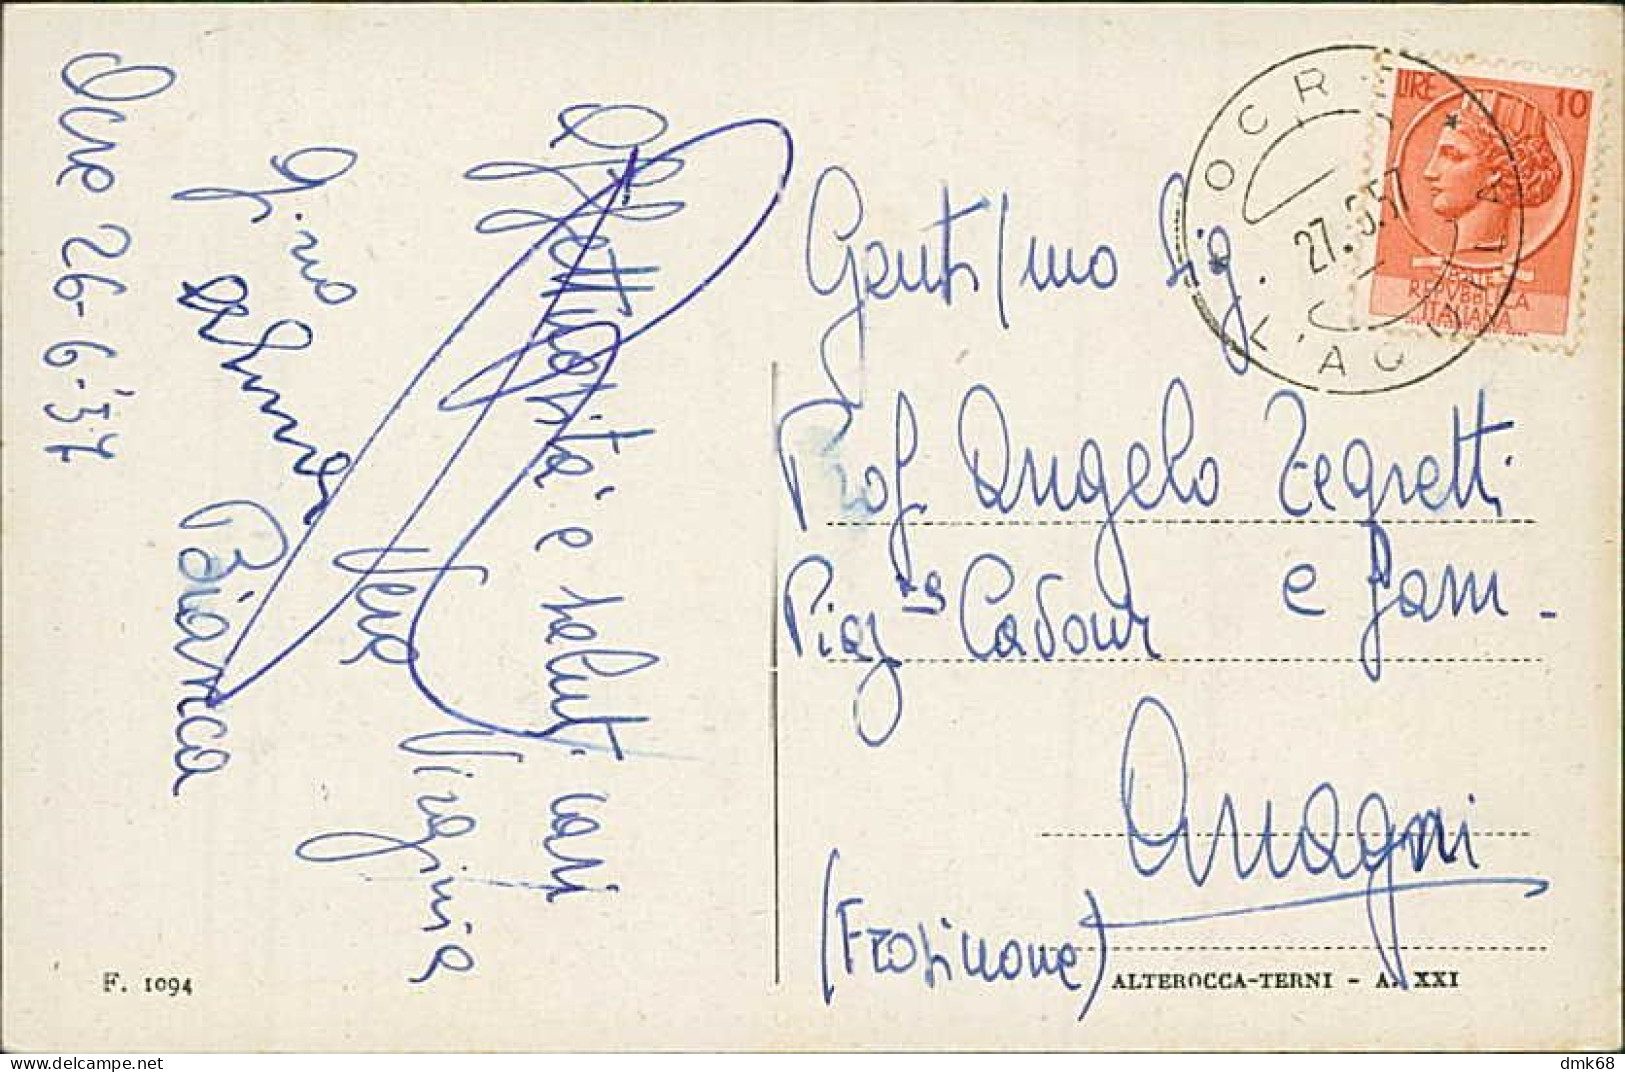 L'AQUILA - PANORAMA DAL GIARDINO PENSILE DEL GRANDE ALBERGO - EDIZ. ALTROCCA 1943 - SPEDITA 1957 (20767) - L'Aquila